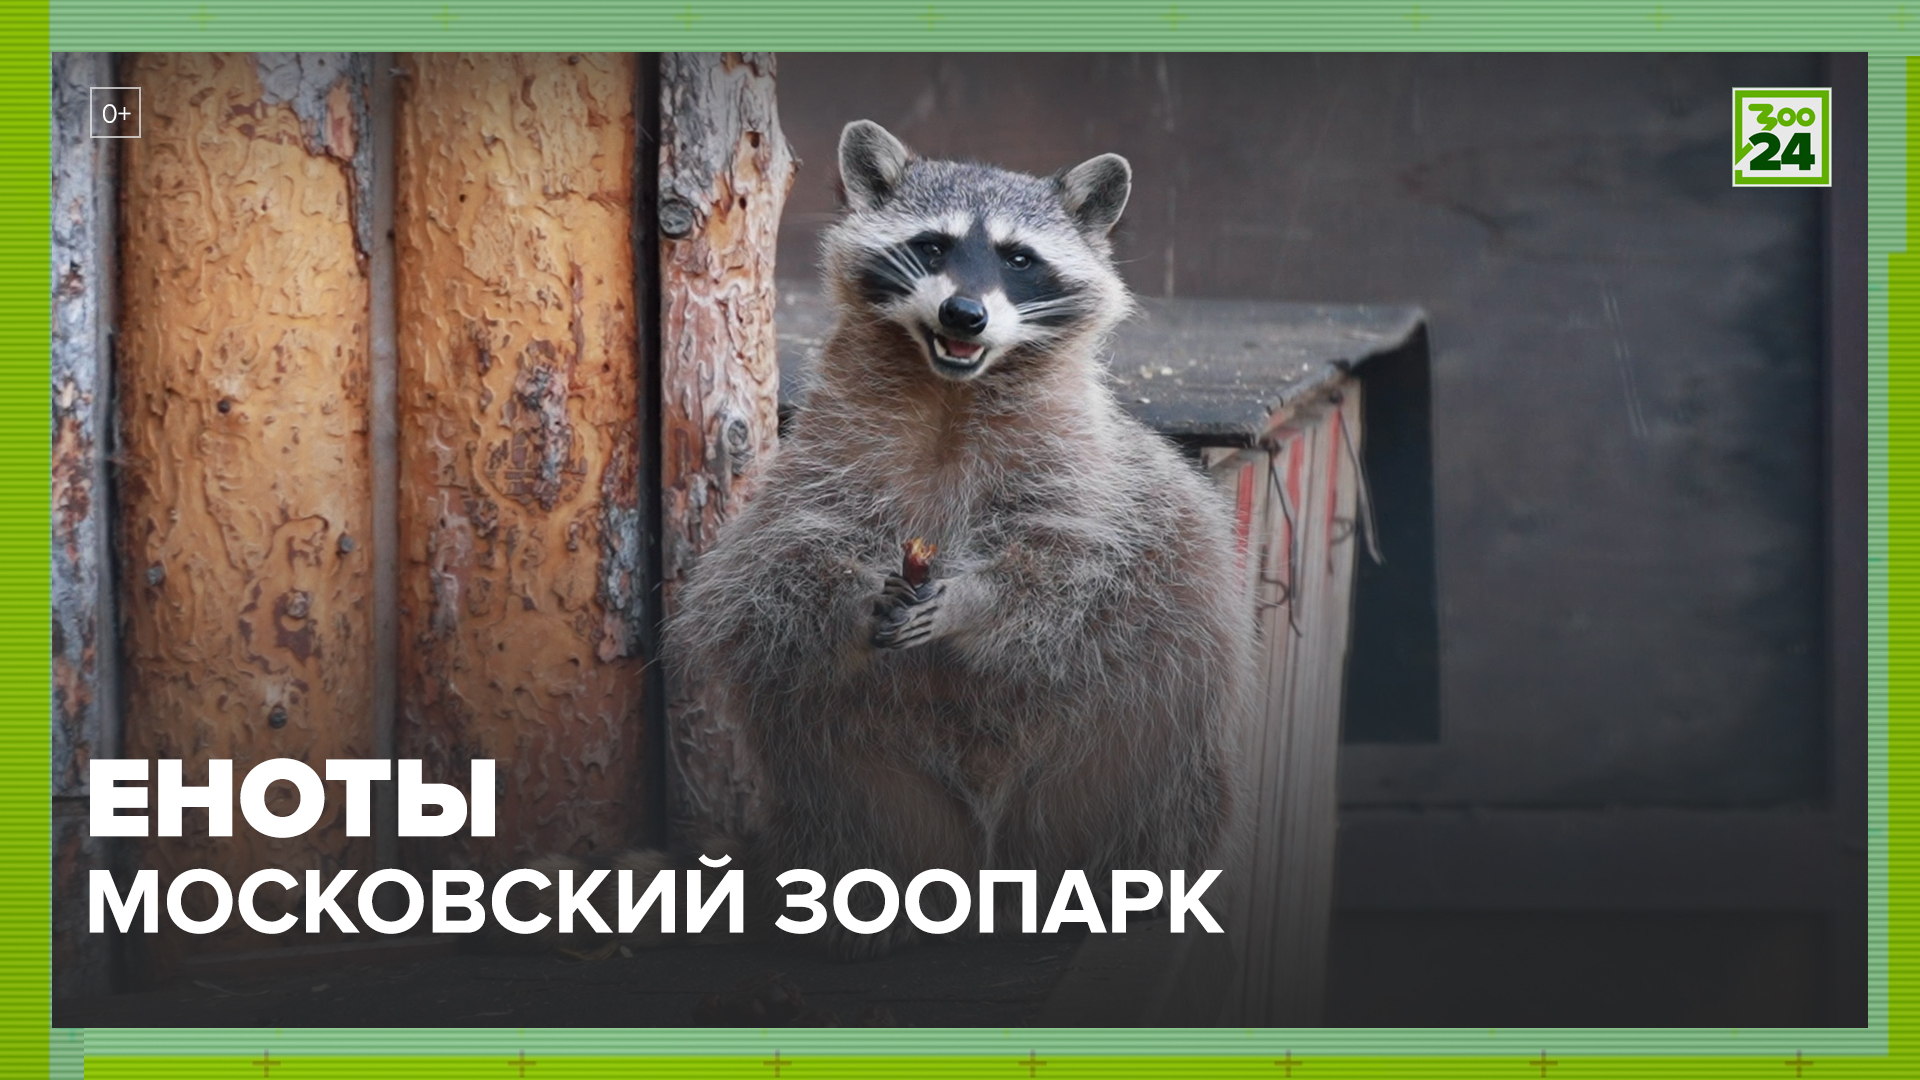 Еноты | Московский зоопарк | ЗОО 24